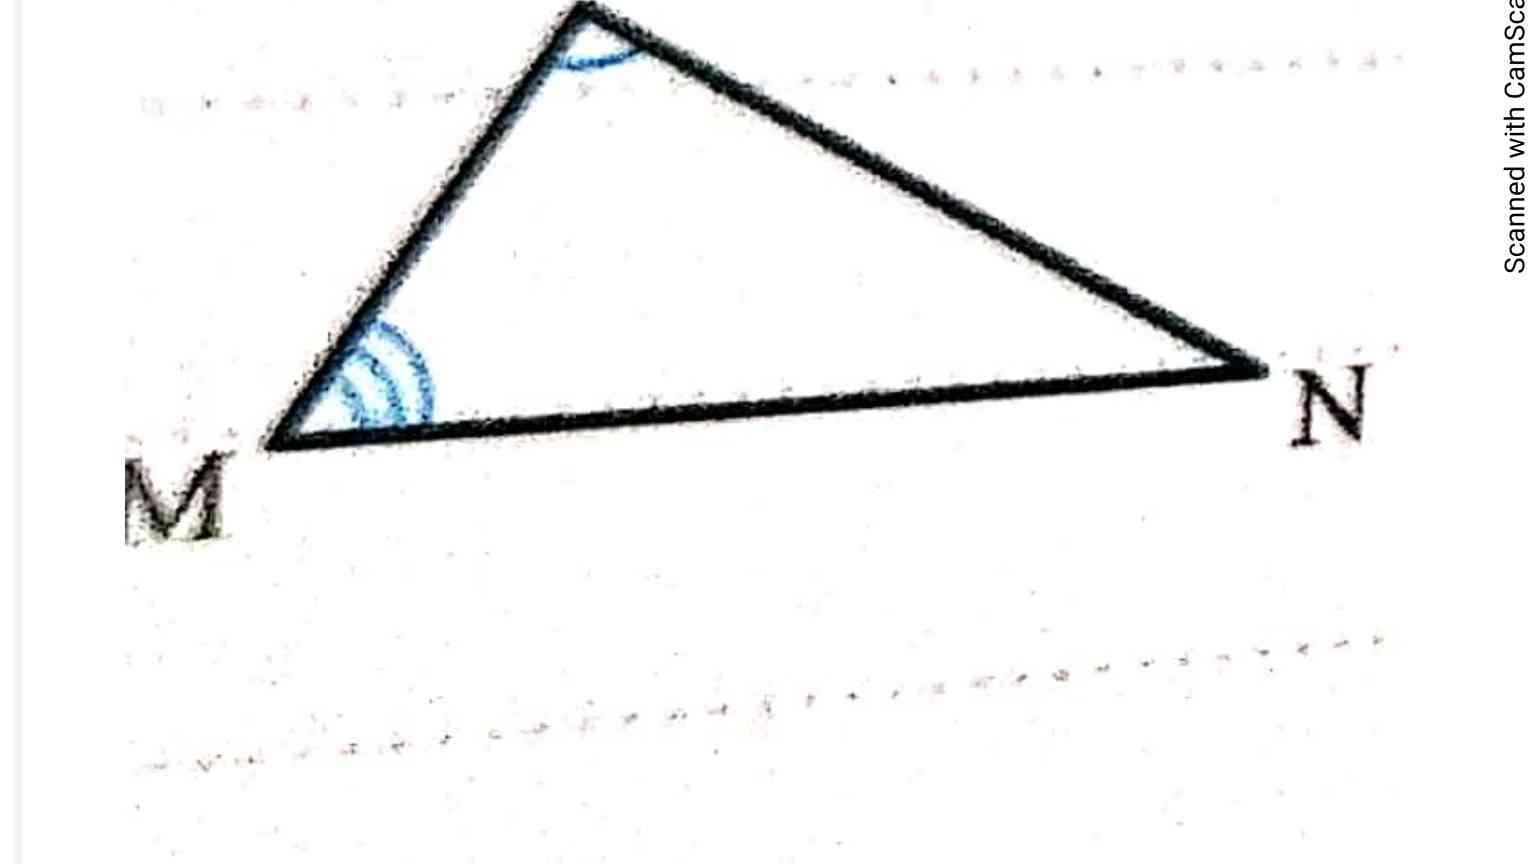 با توجه به سوال مقابل اثبات کنید مجموع زوایای داخلی مثلث 180 درجه میشود 